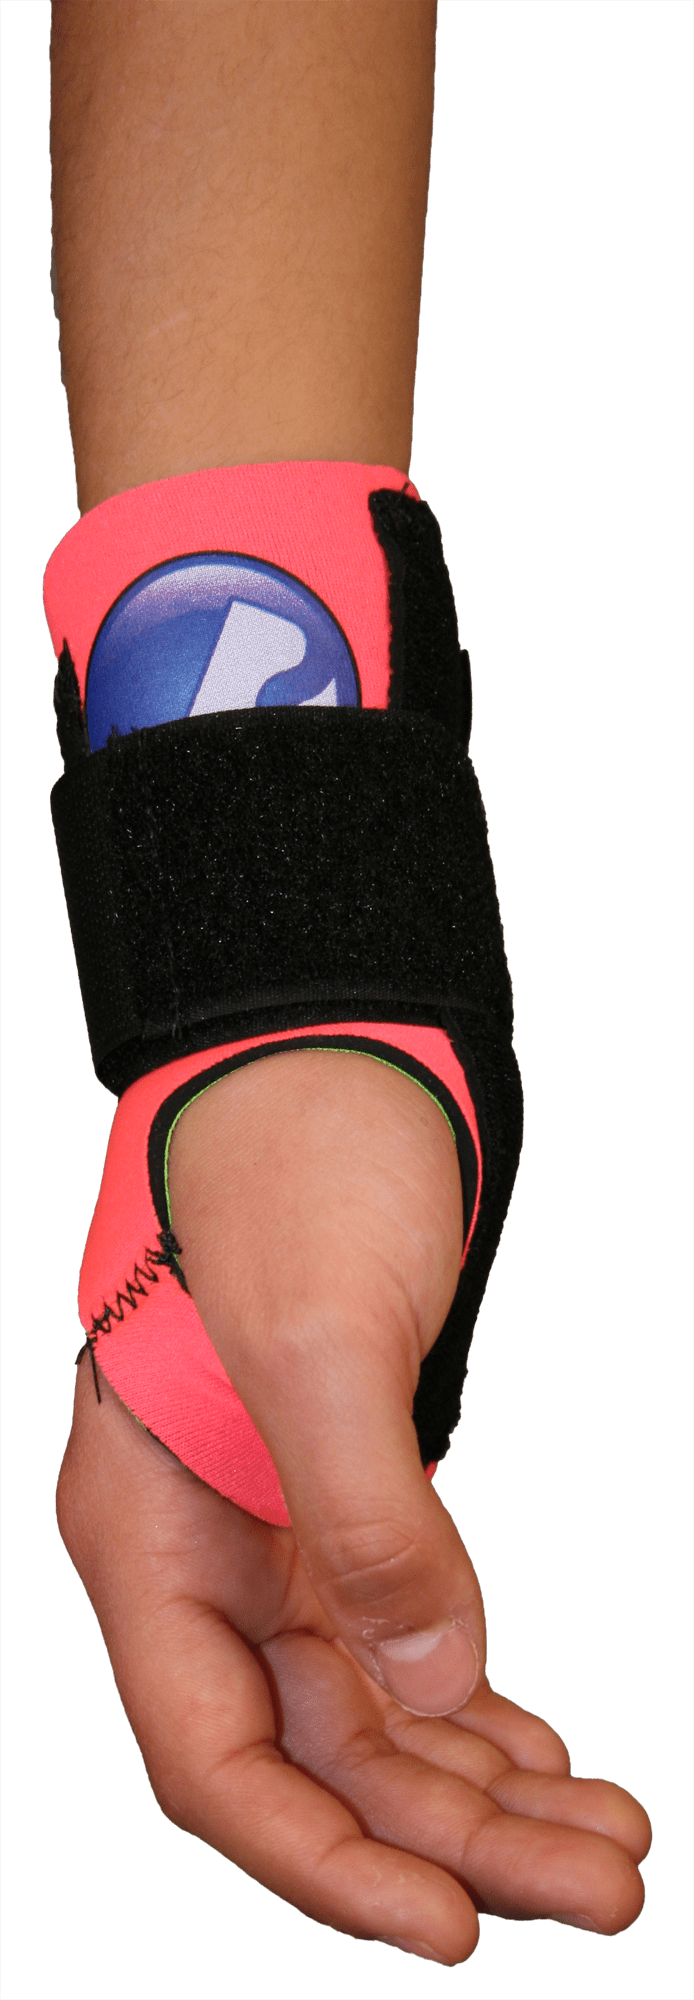 Bunga Youth Pro Wrist Brace [CW1]